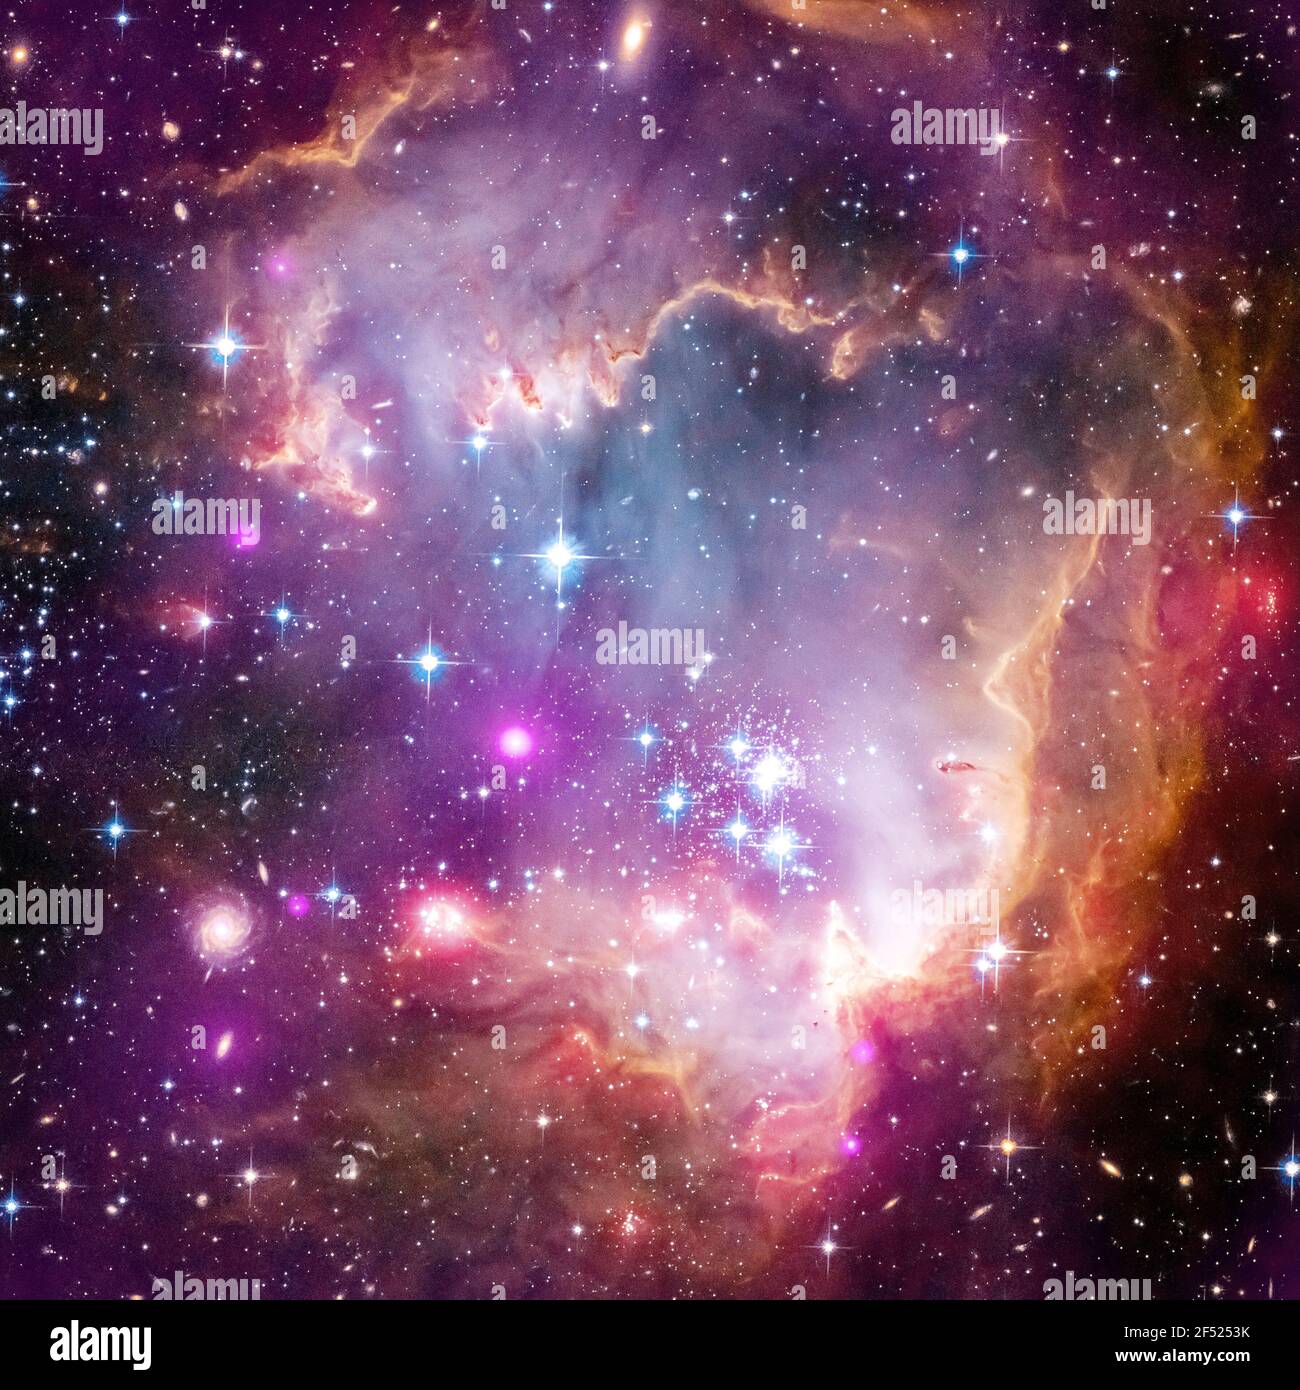 Le osservazioni di Chandra, mostrate in viola, mostrano le emissioni di raggi X da giovani stelle con masse simili al nostro Sole. L'"ala" della nuvola Magellanica piccola. Foto Stock